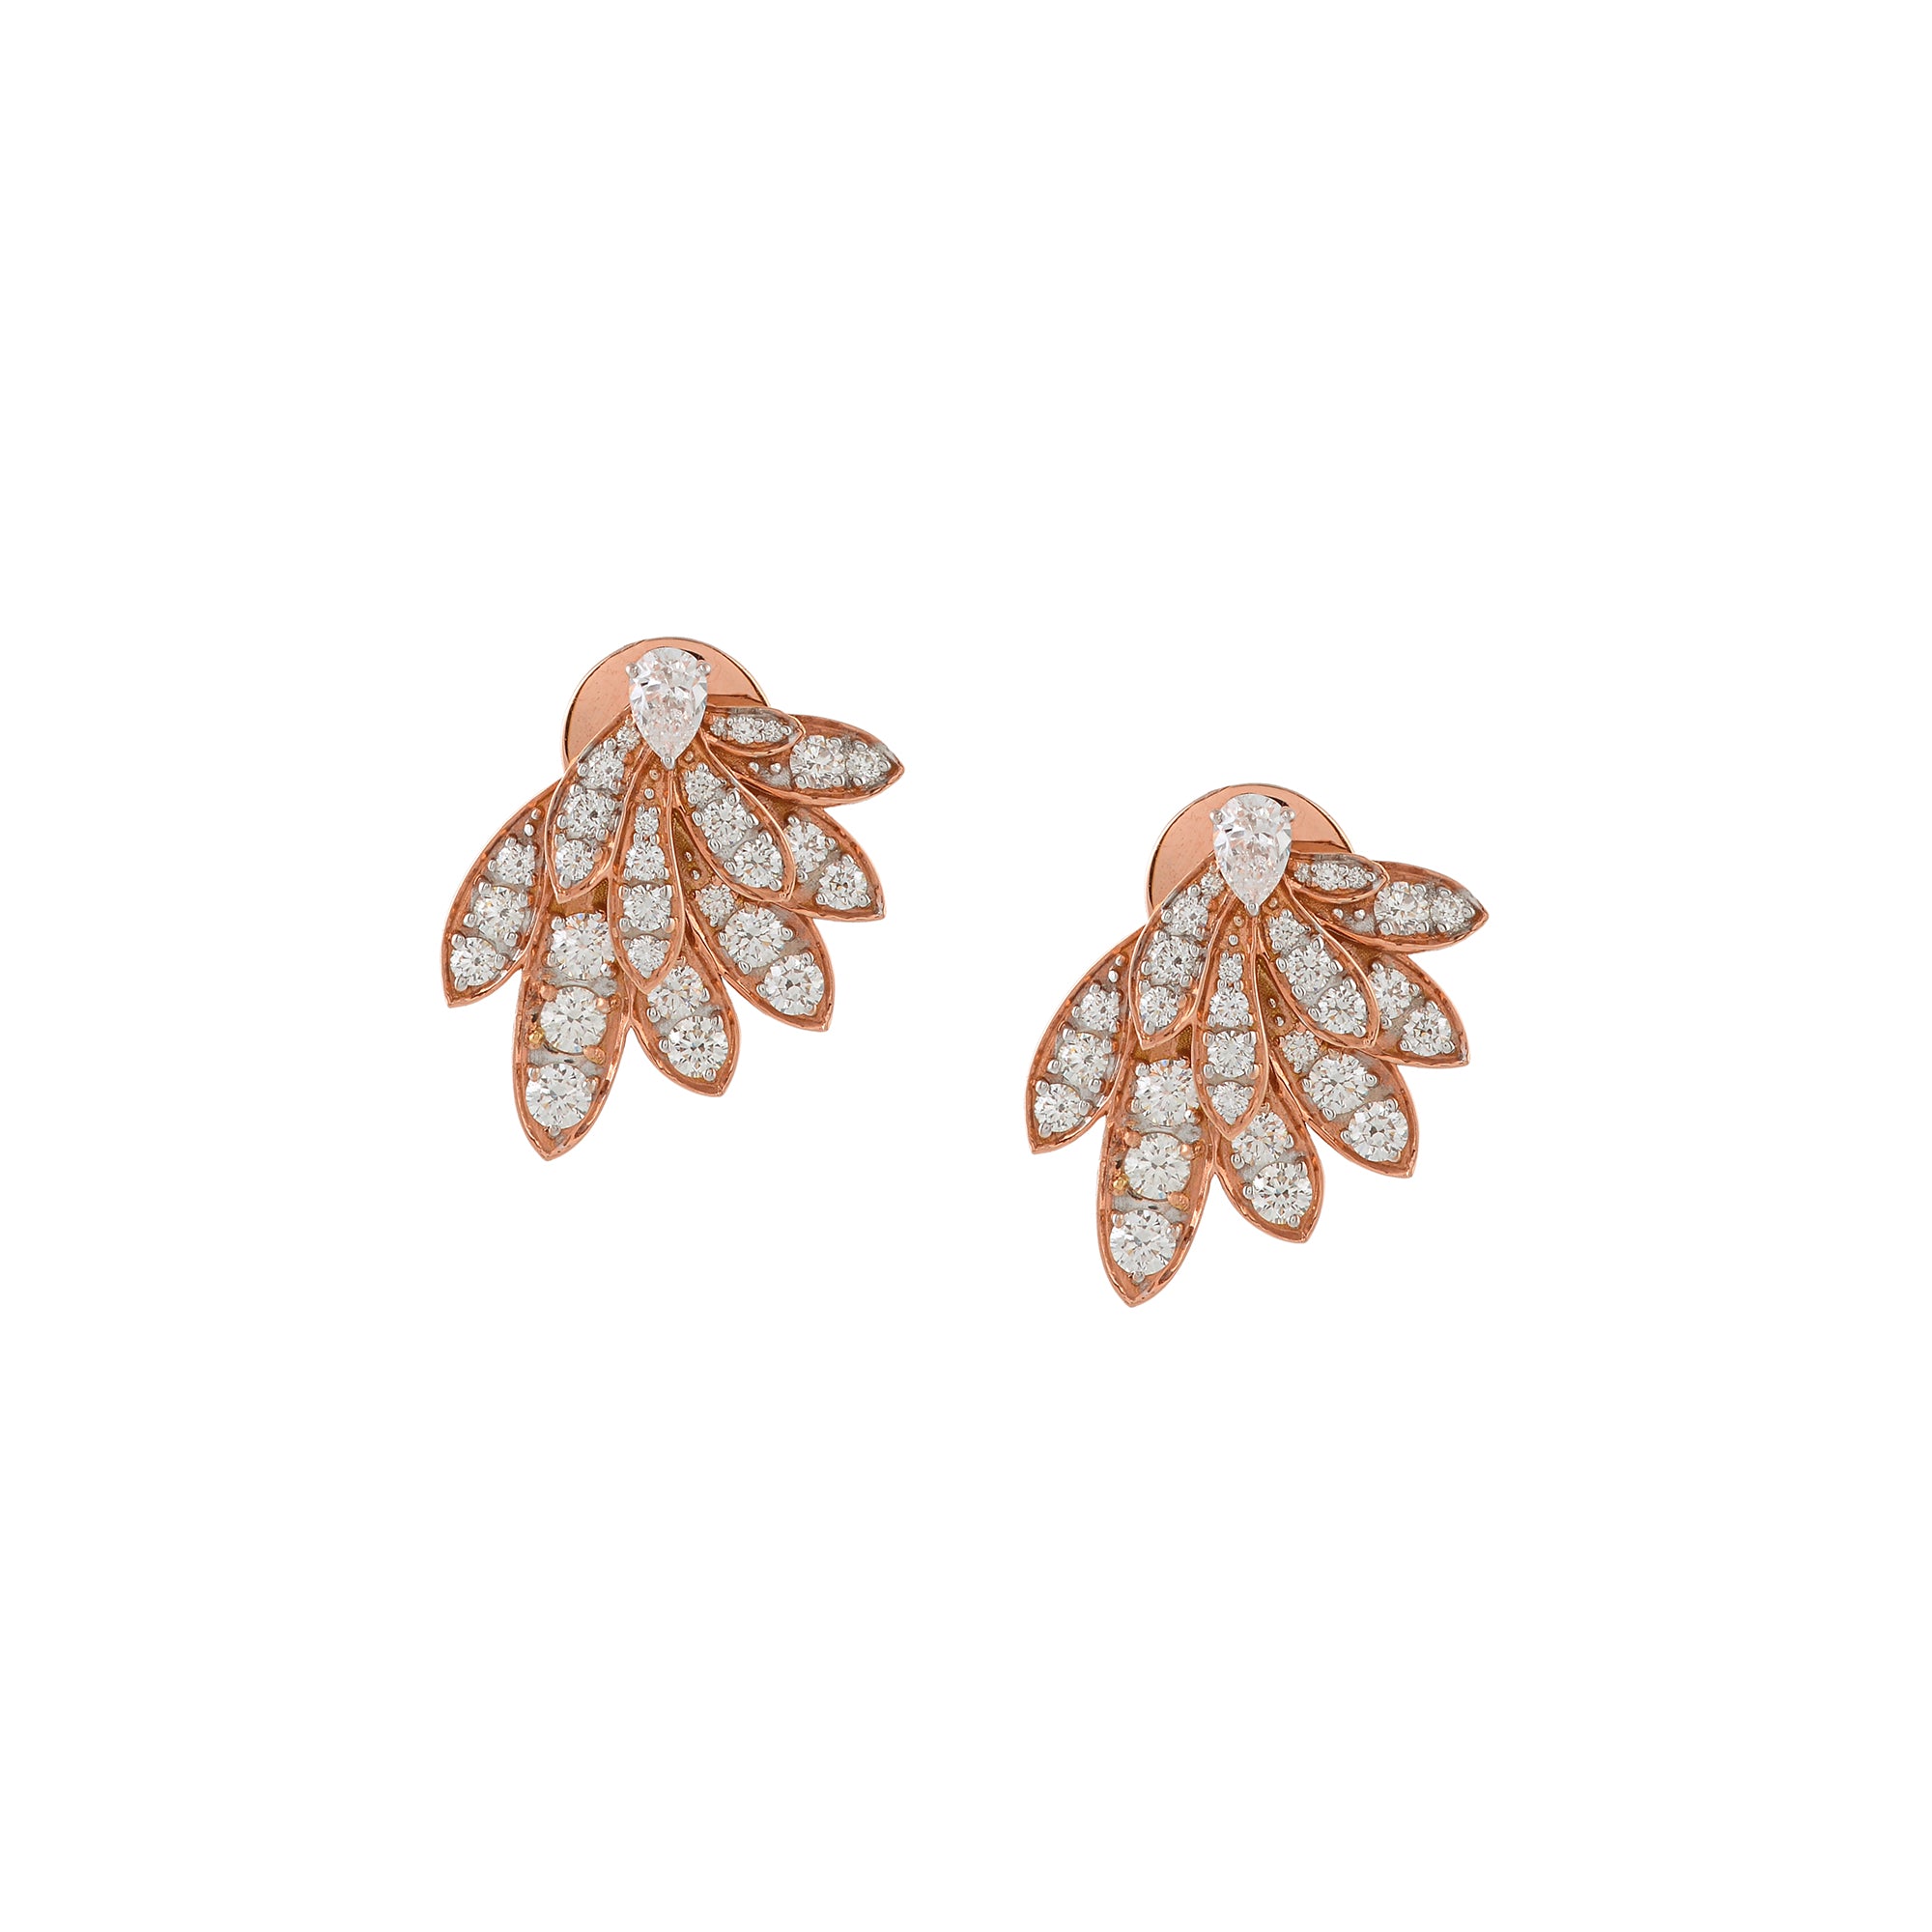 Luxurious Diamond Earrings In Petals Motif